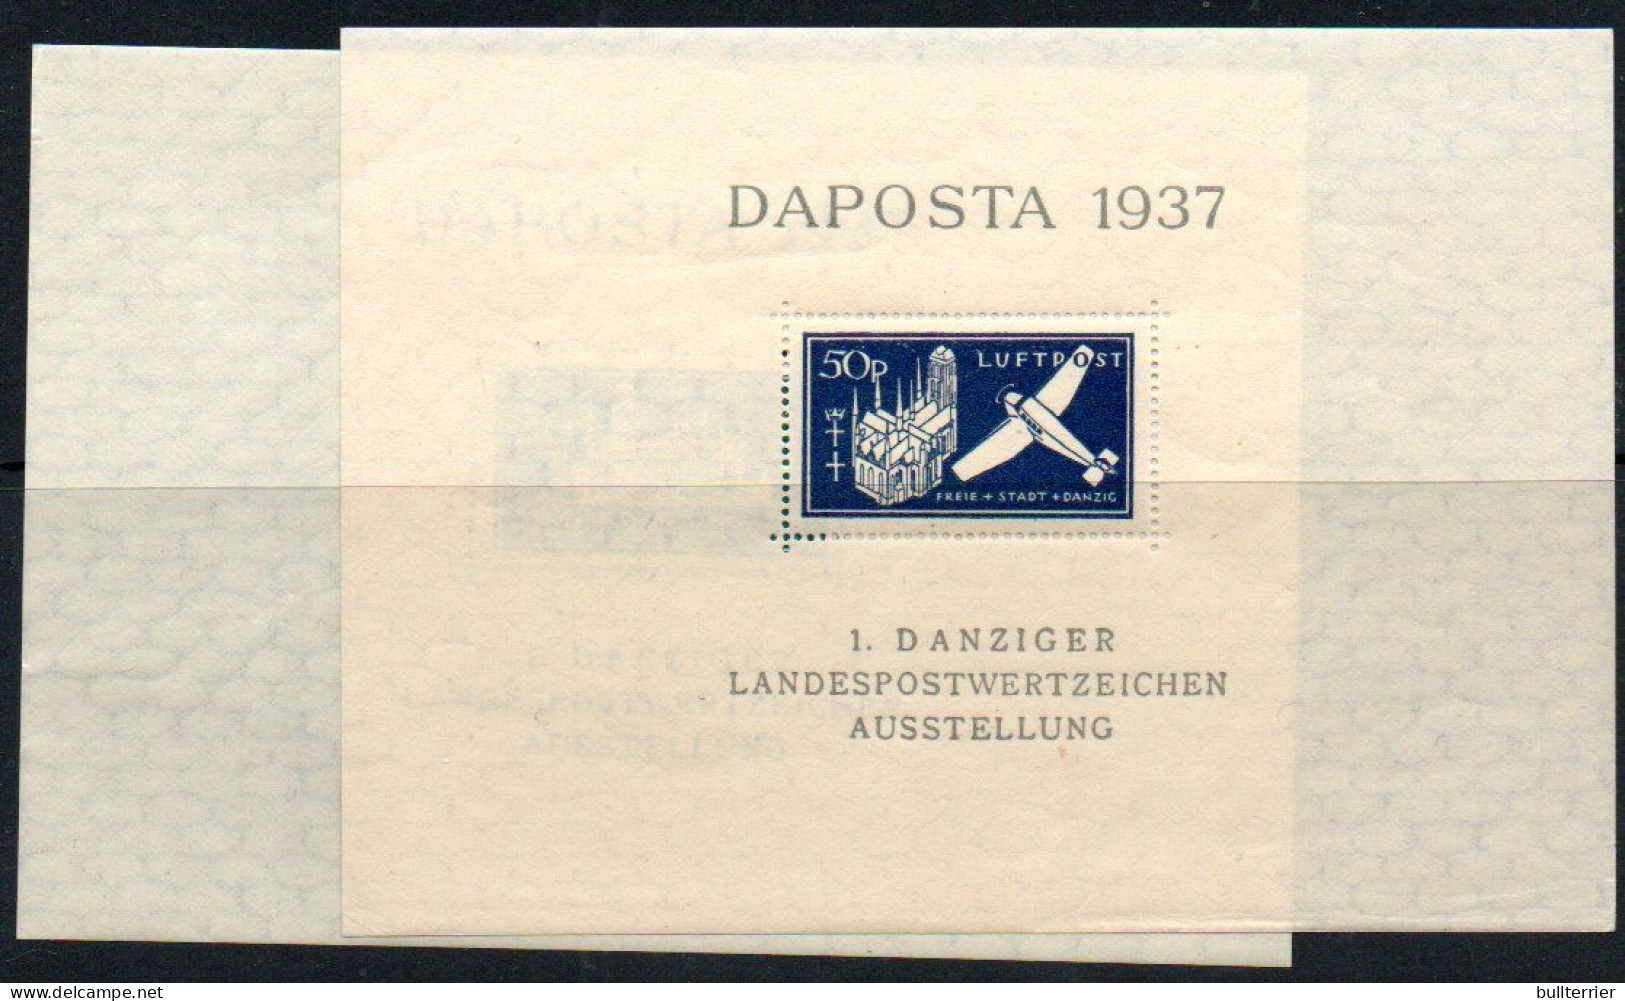 DANZIG - 1937 -DAPOSTA Souvenir Sheets Both  MNH - Autres - Europe